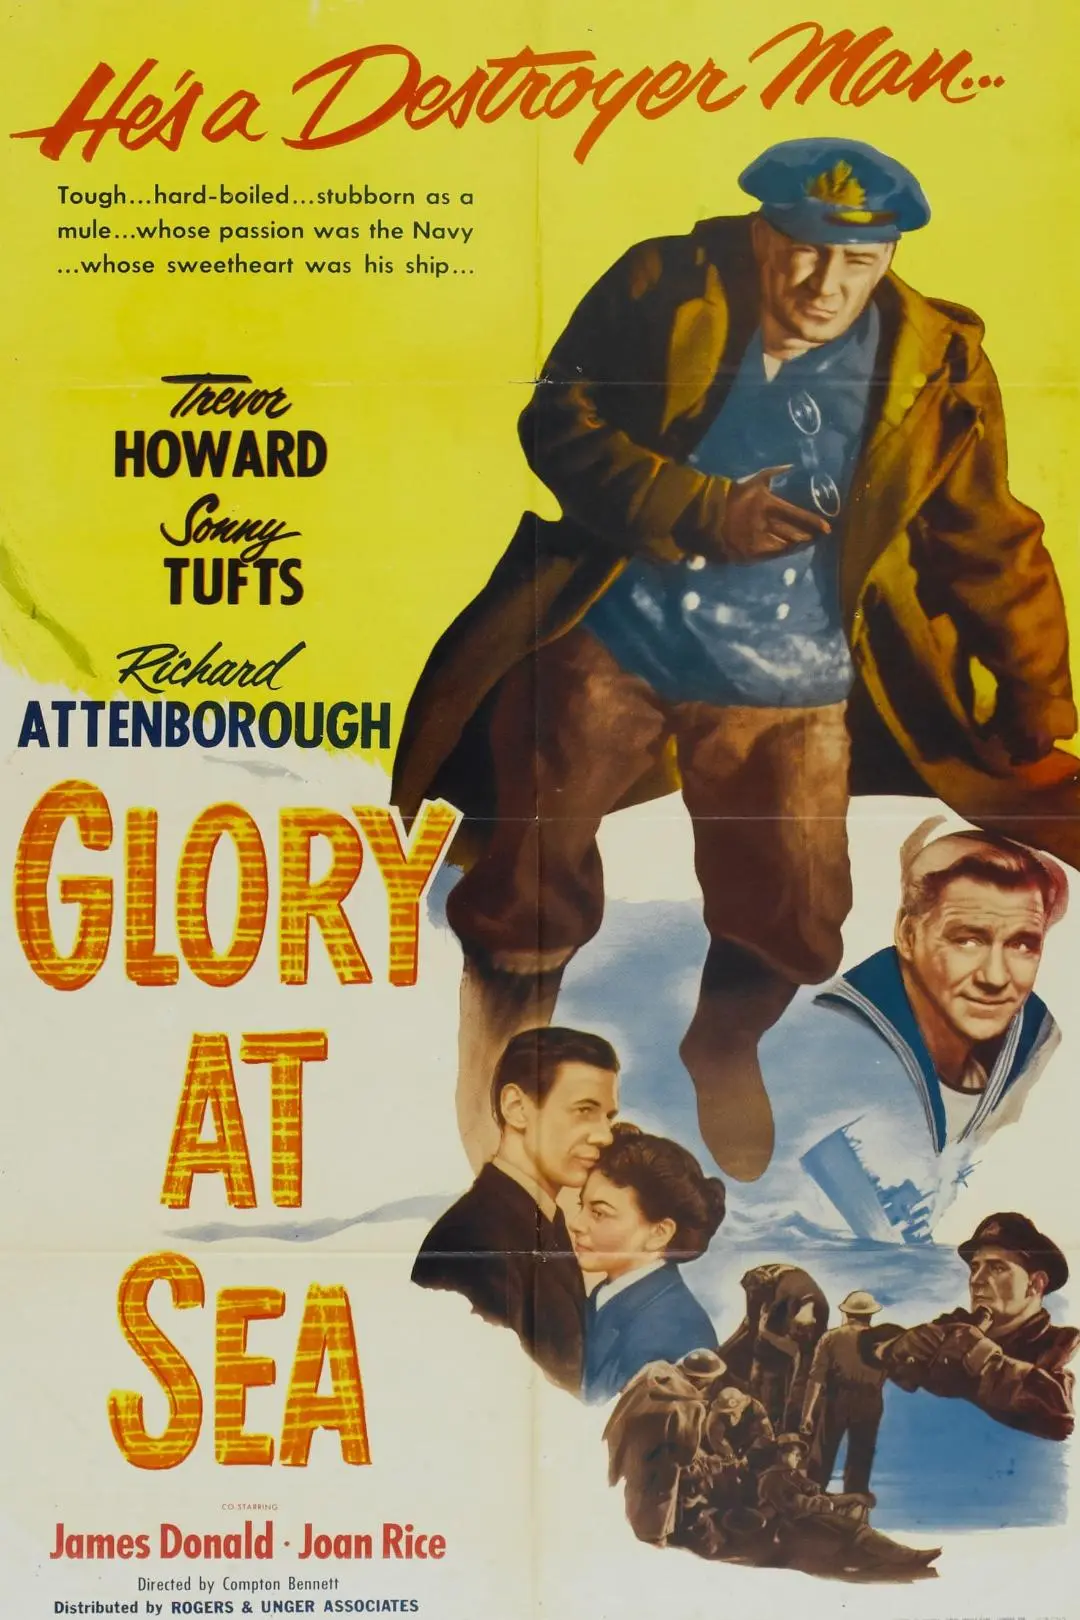 Glory at Sea_peliplat